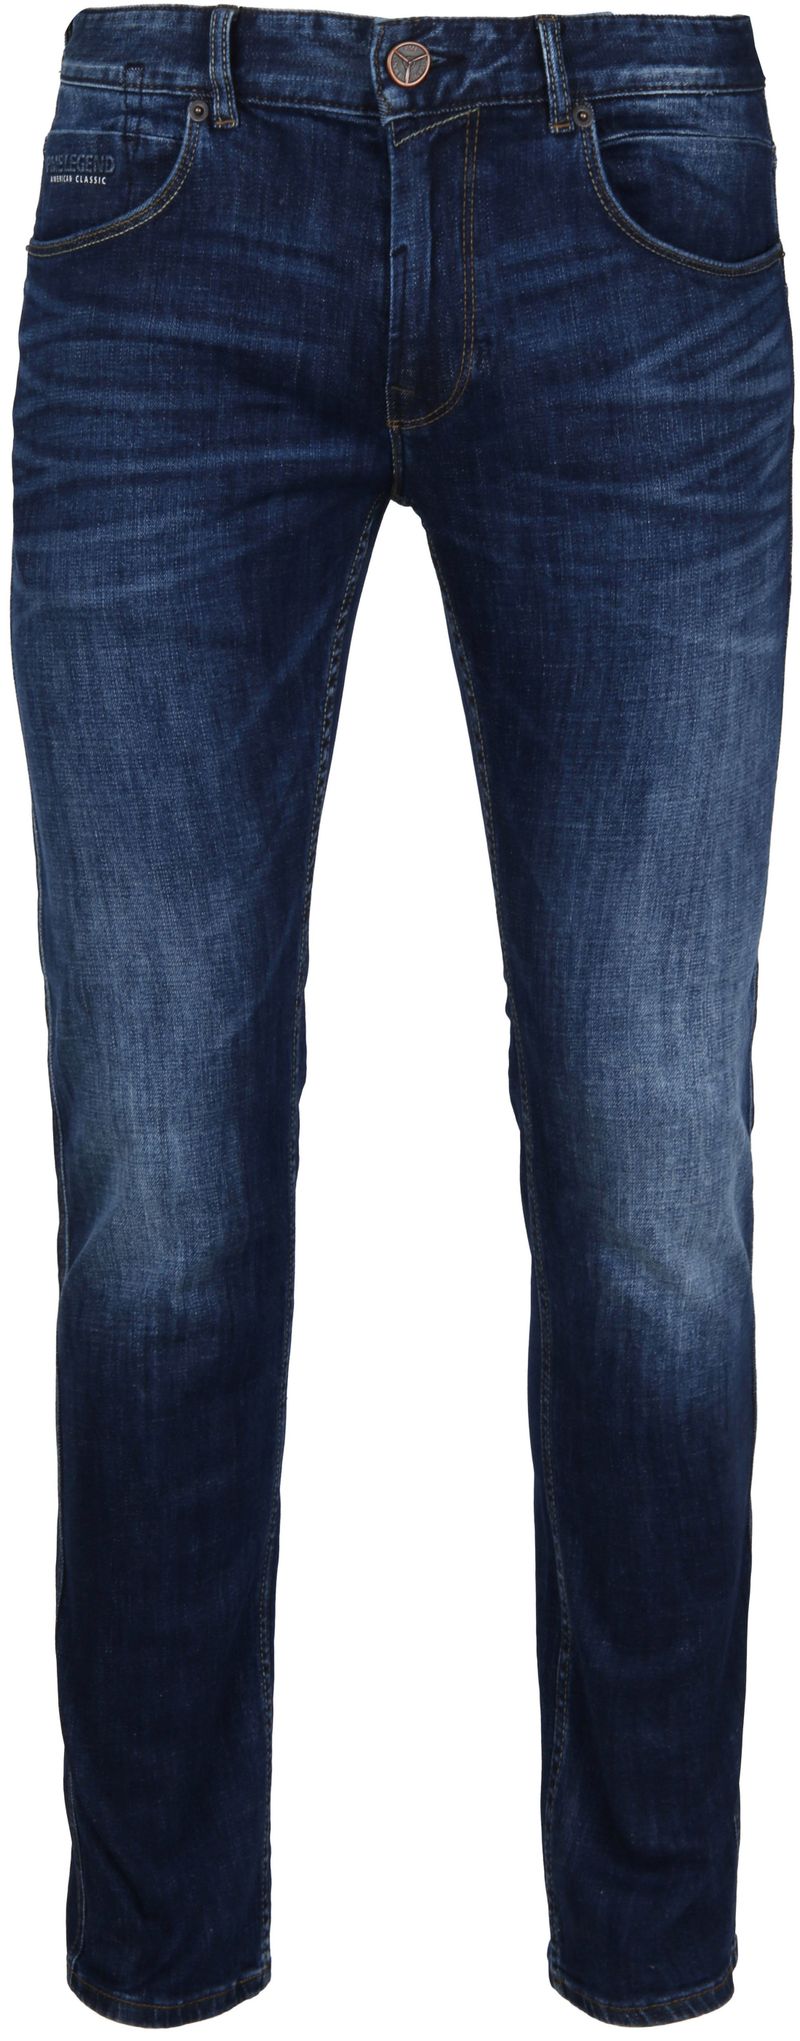 PME Legend Nightflight Jeans Dunkelblau - Größe W 28 - L 30 von PME Legend